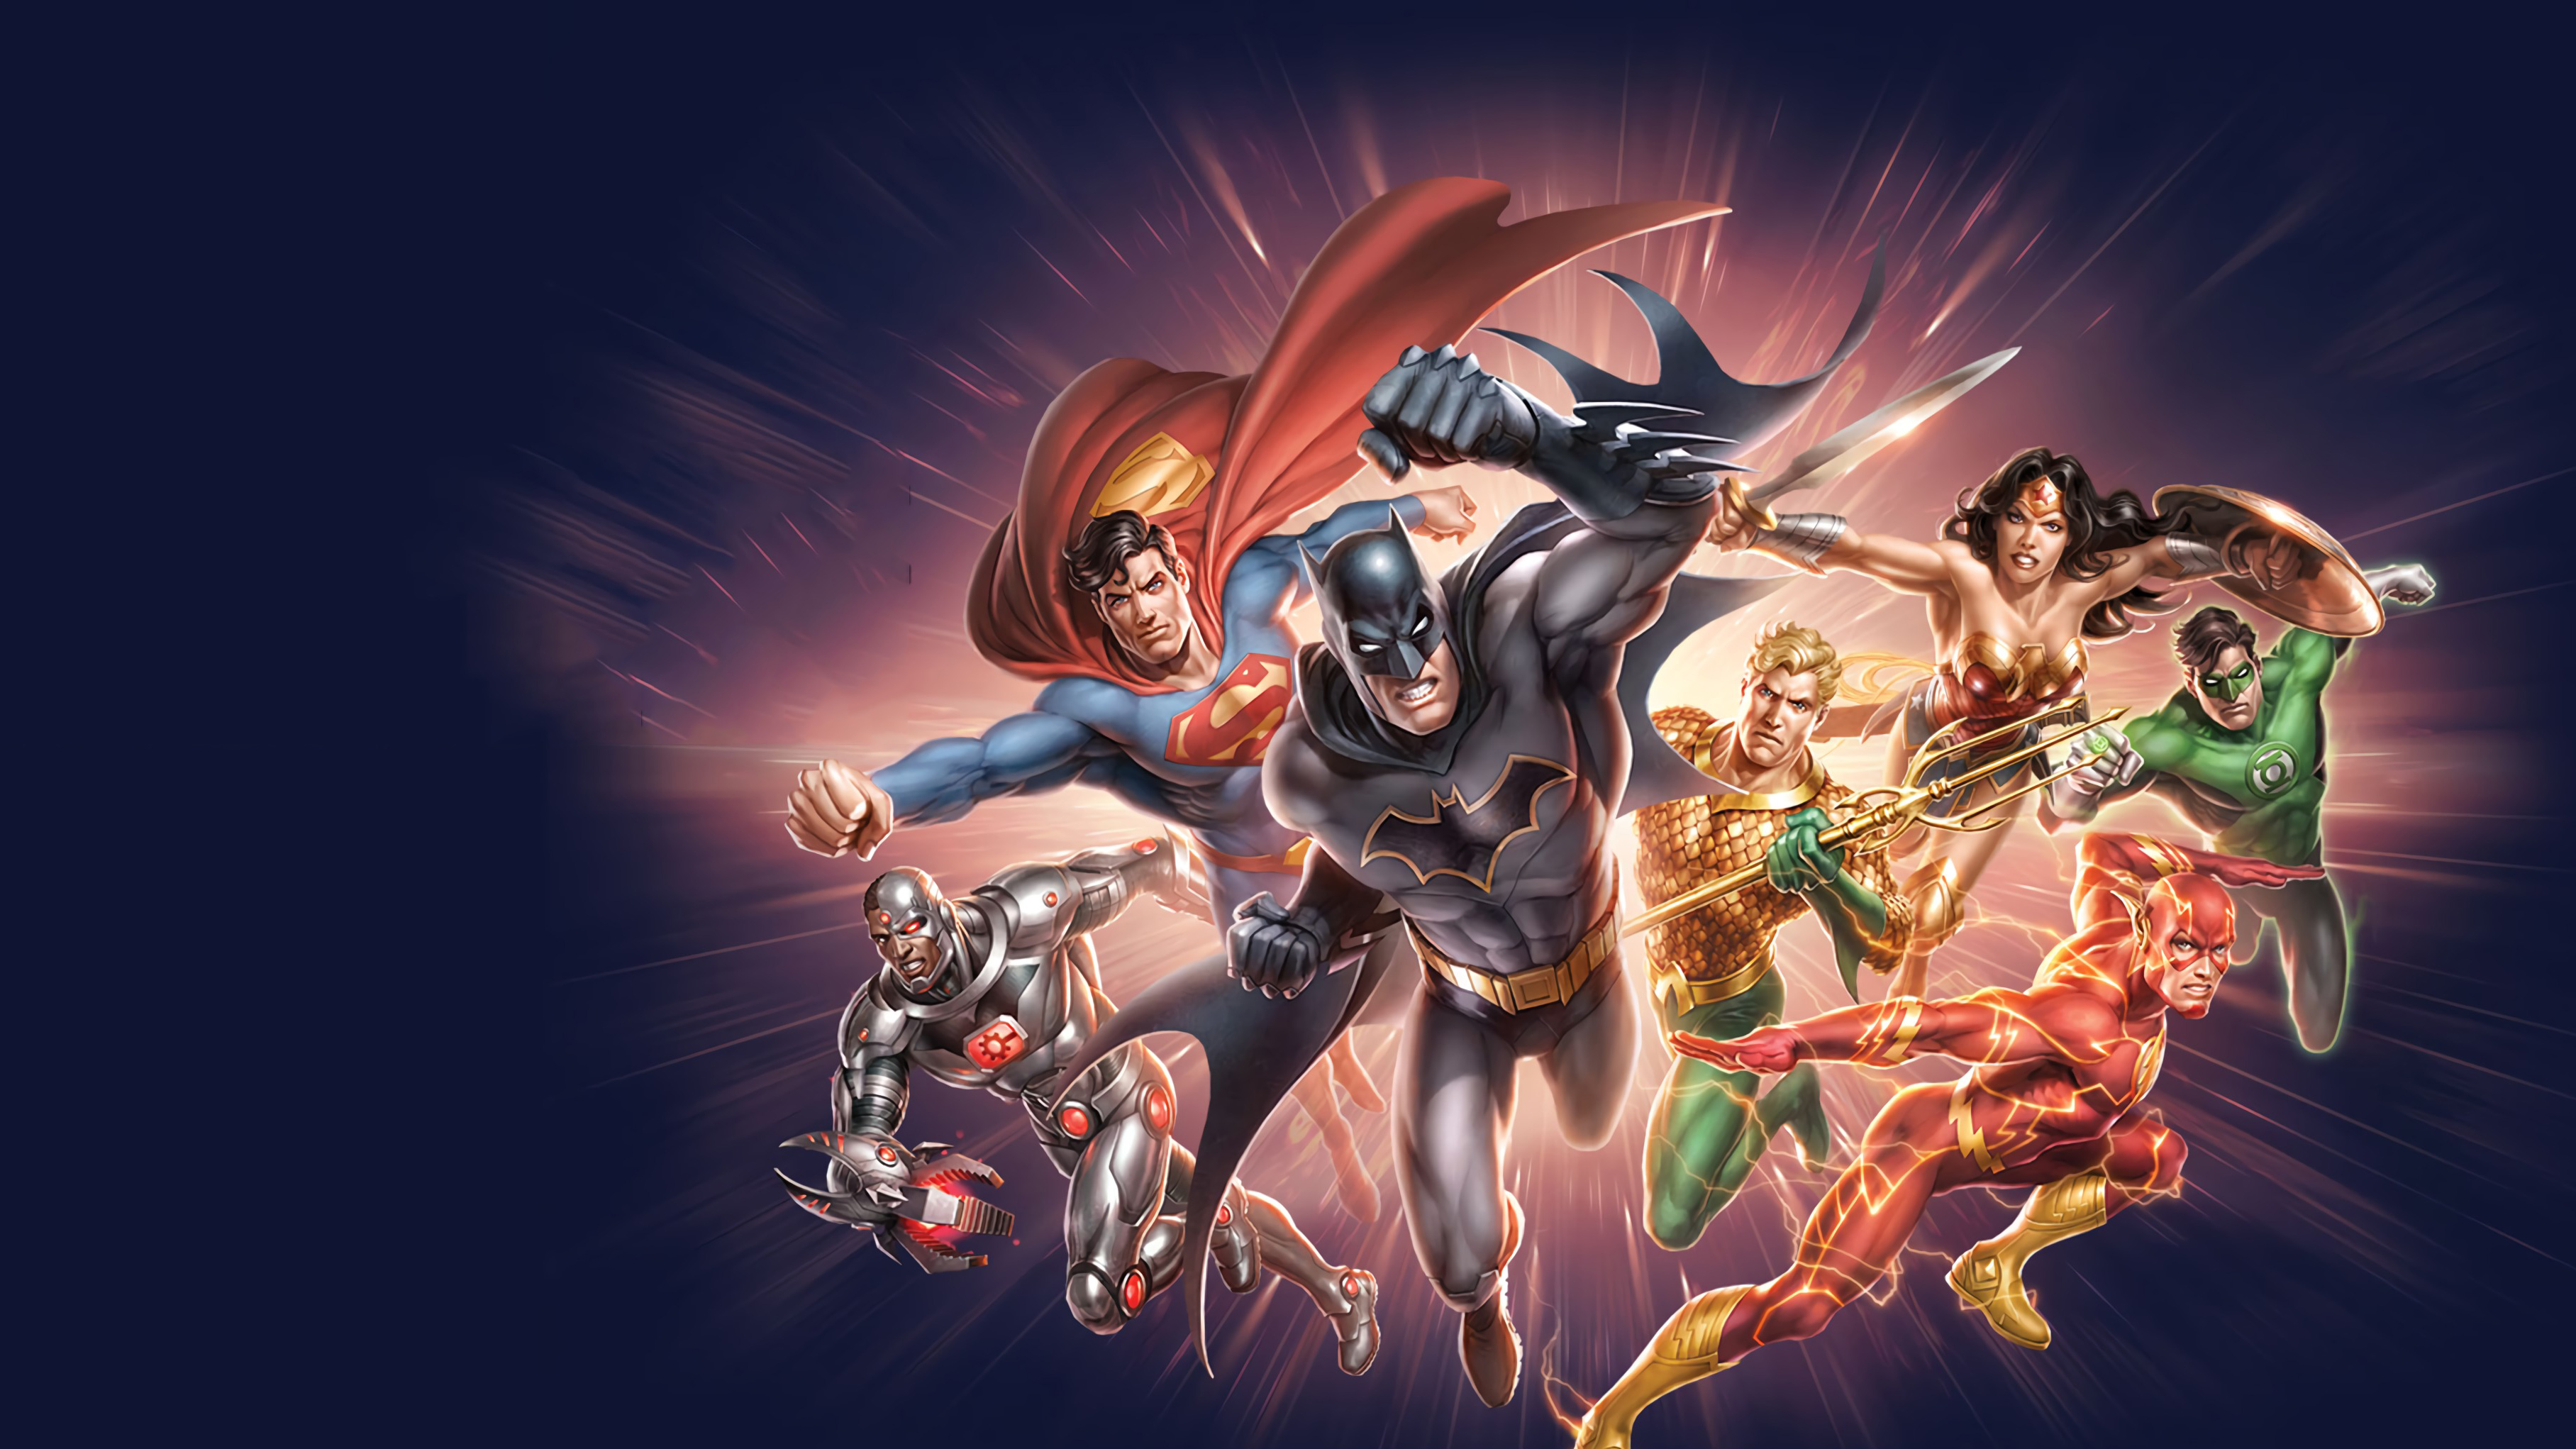 Aquaman Batman Cyborg Dc Comics Dc Comics Flash Green Lantern Justice League Superman Wonder Woman 3632x2043